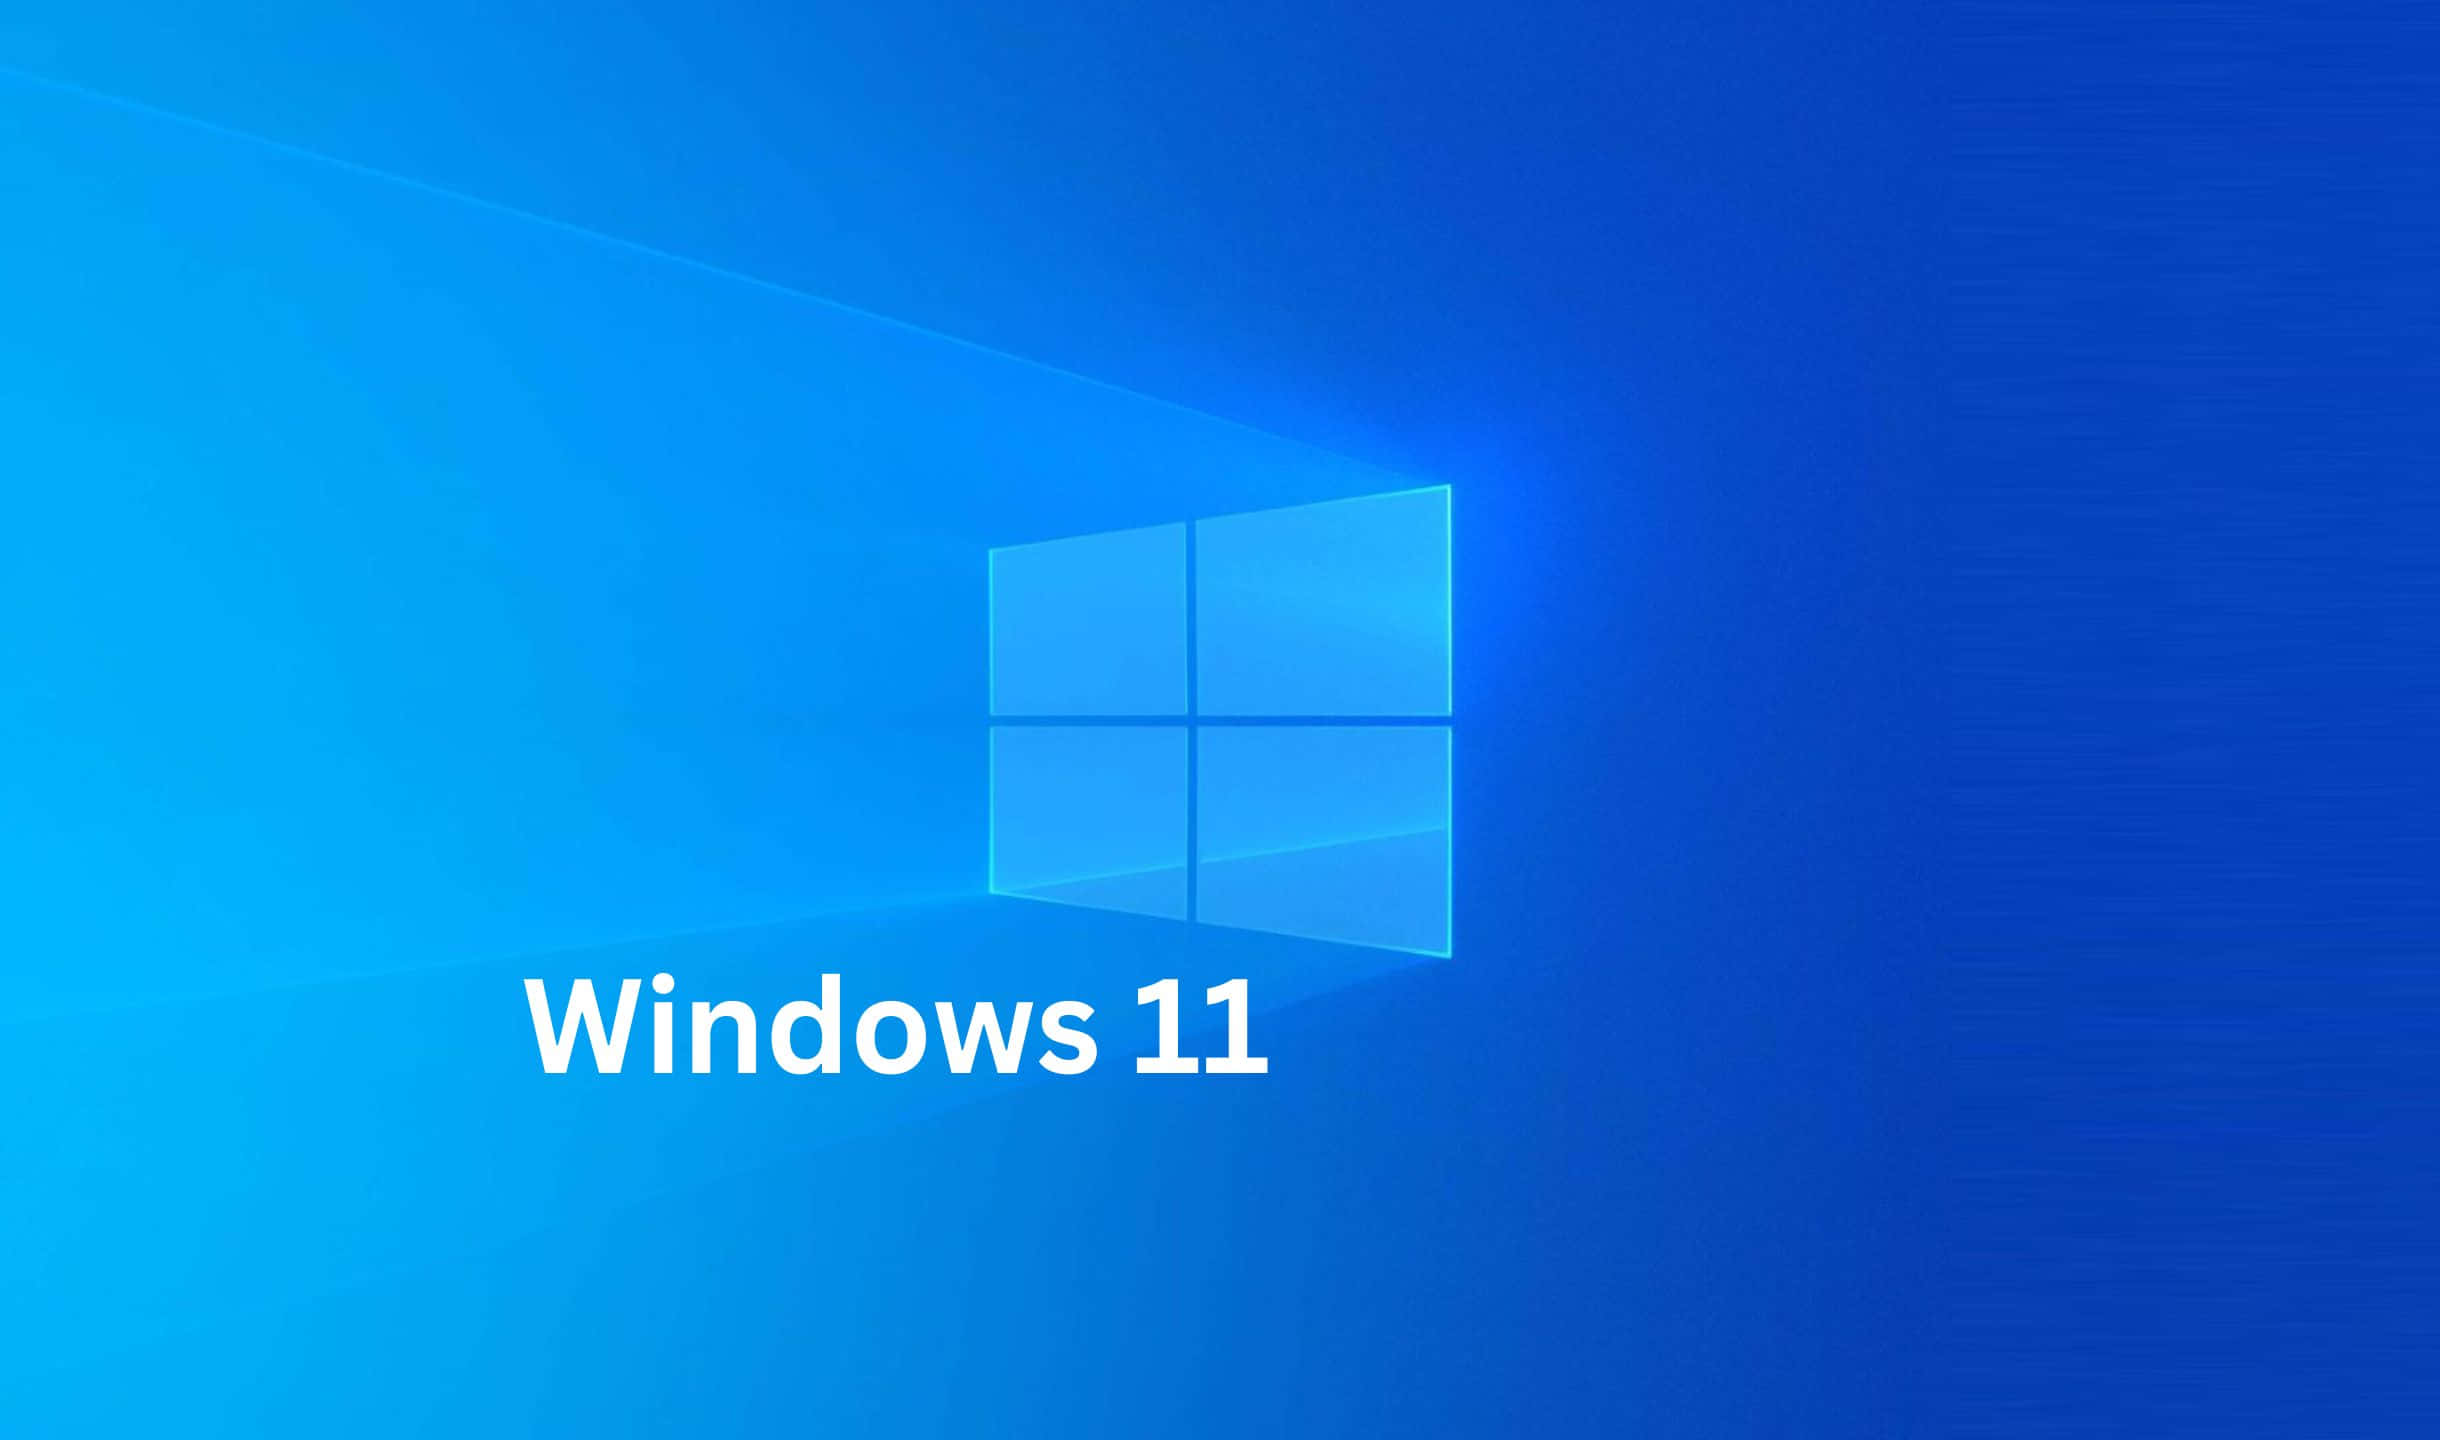 Neueund Aufregende Funktionen In Windows 11